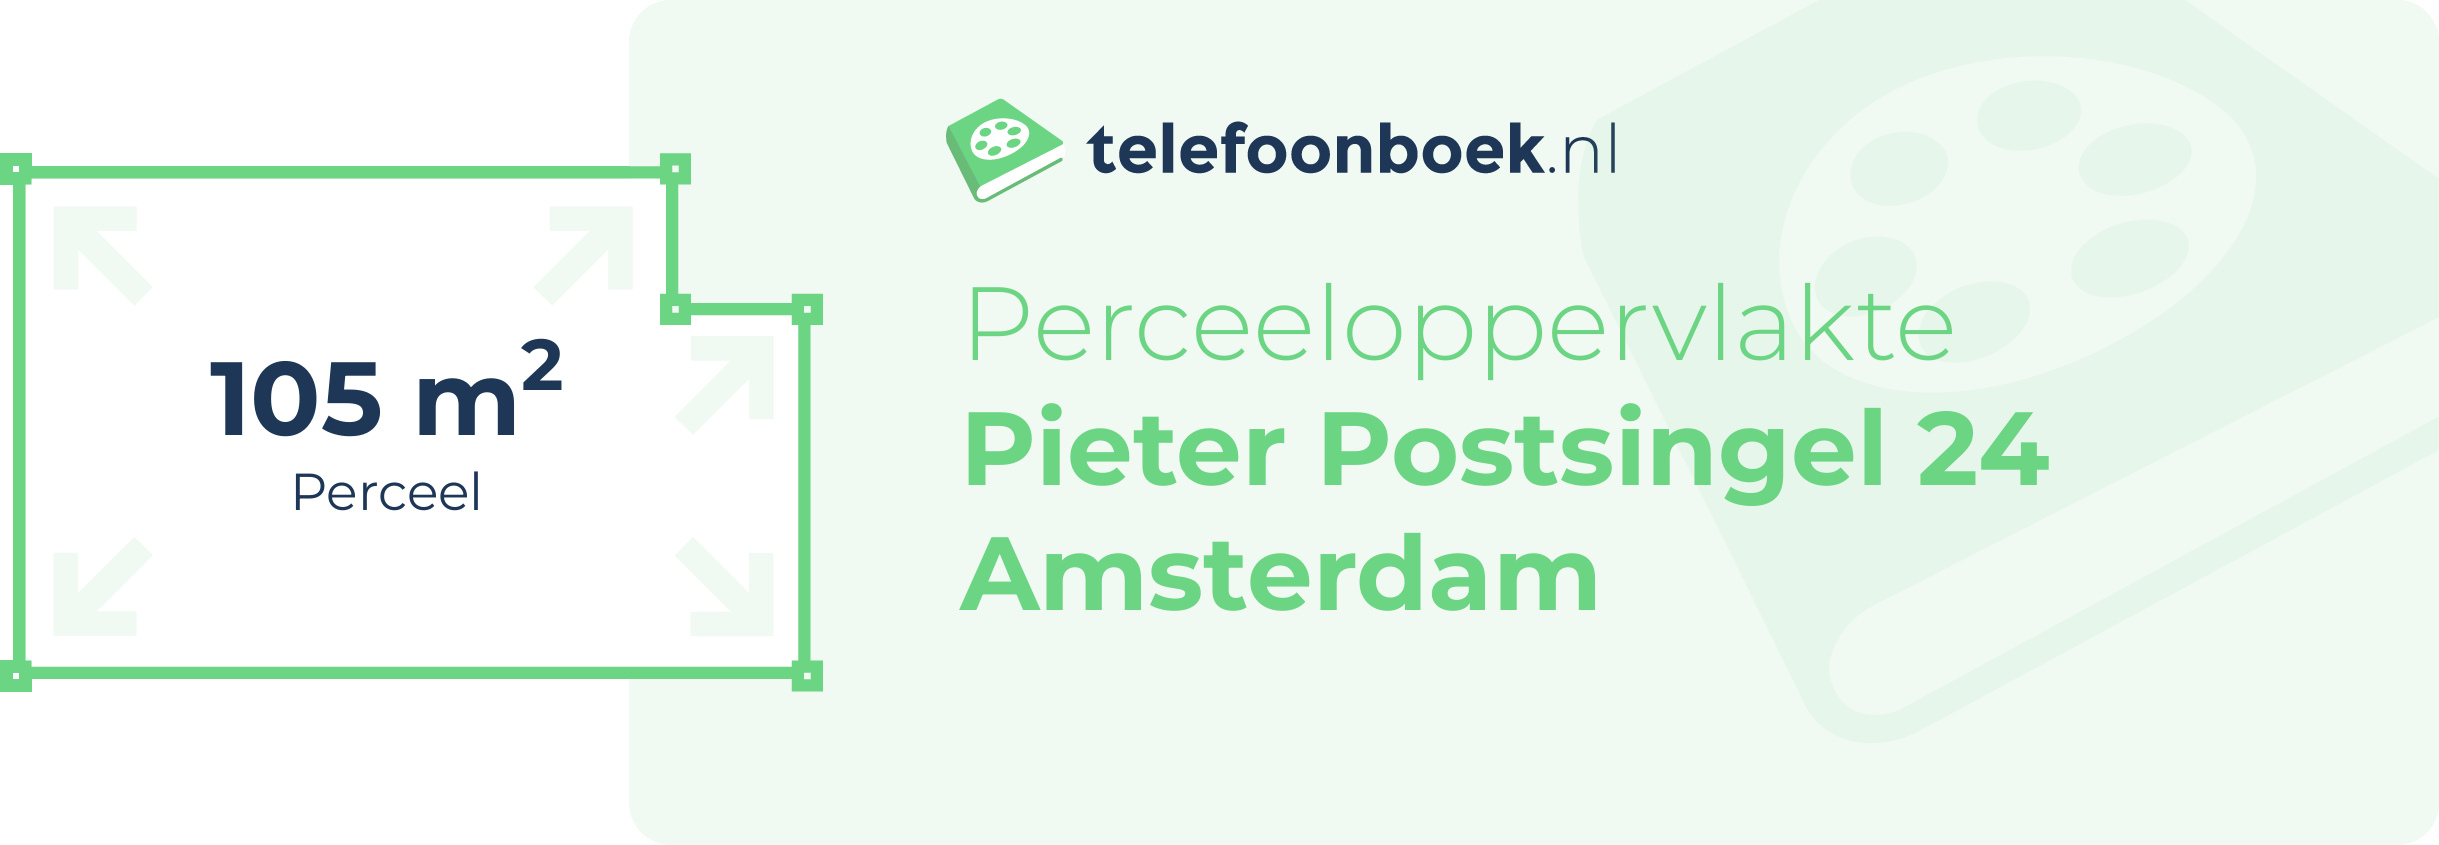 Perceeloppervlakte Pieter Postsingel 24 Amsterdam